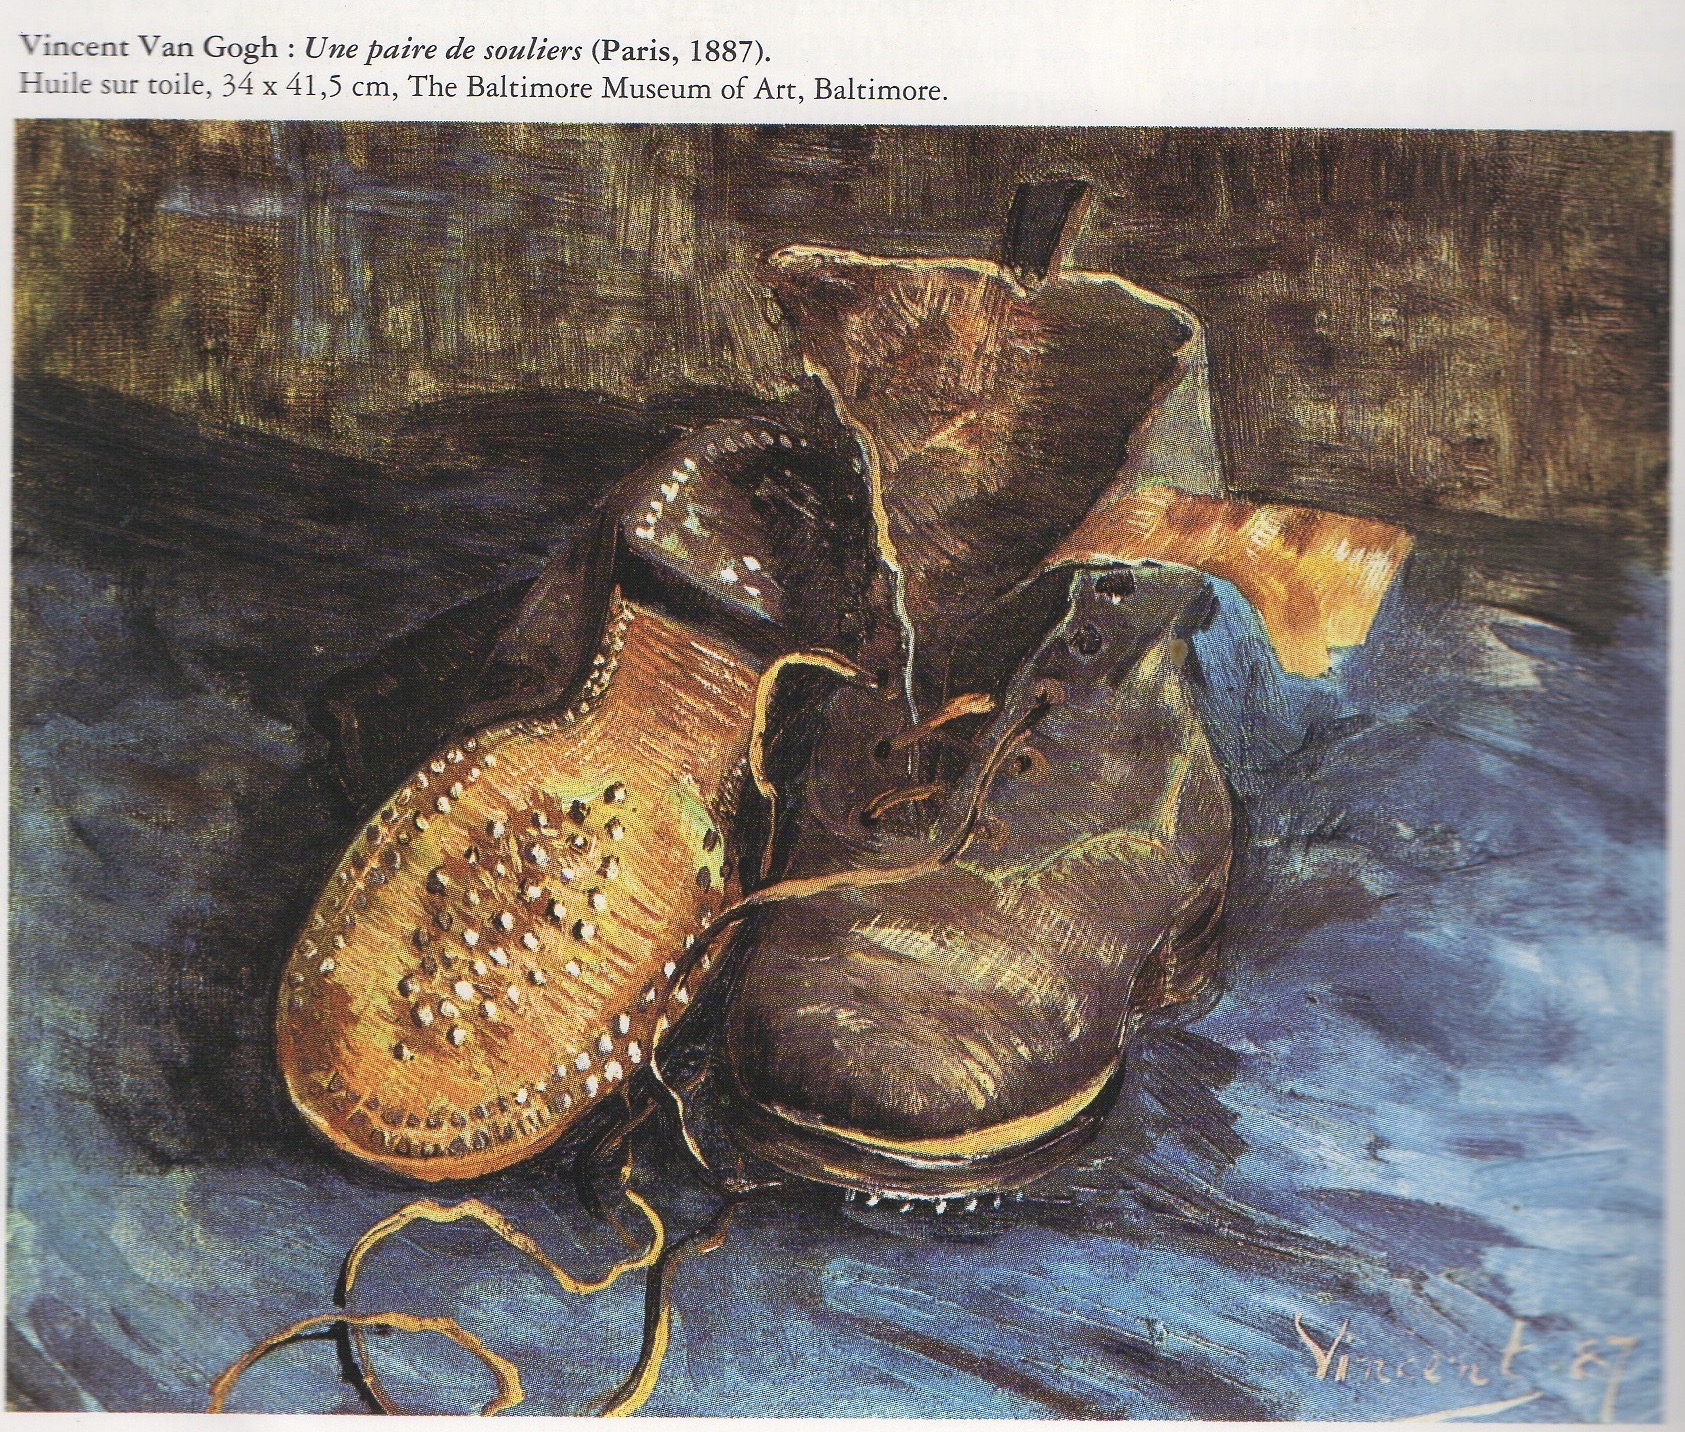 Les chaussures de Van Gogh - C'était la classe de Dominique